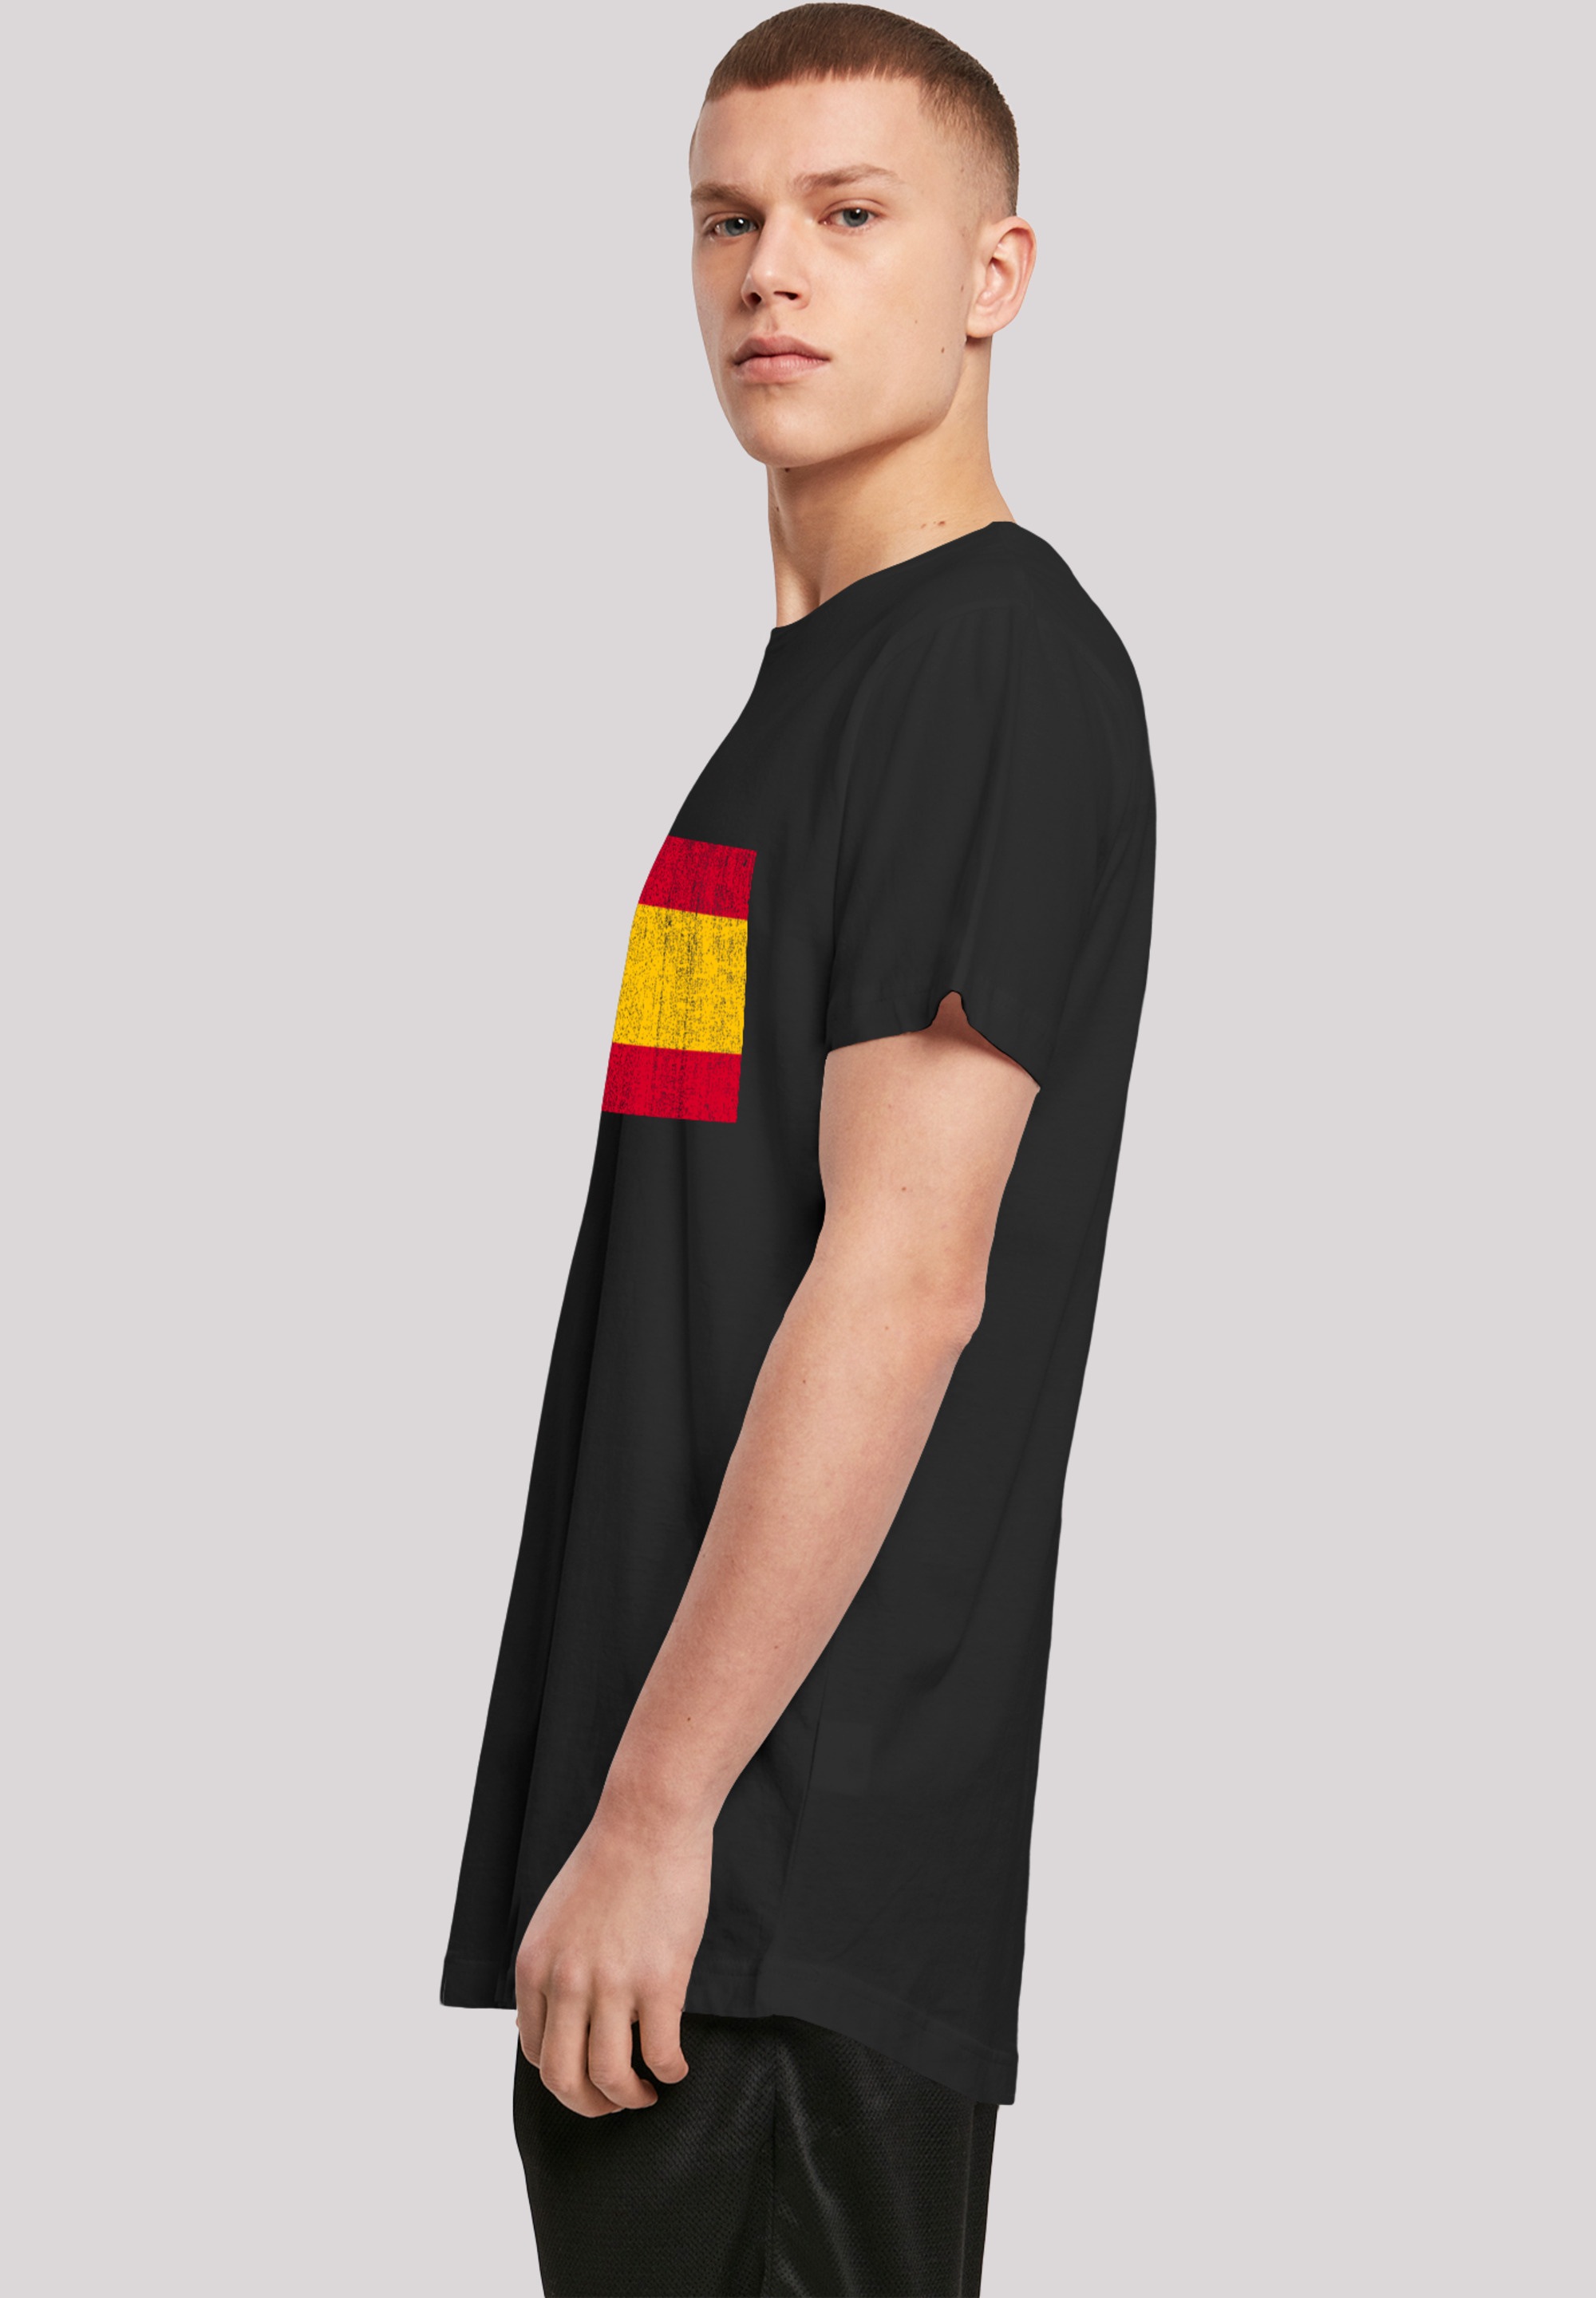 BAUR Print distressed«, »Spain Spanien Flagge F4NT4STIC kaufen ▷ | T-Shirt